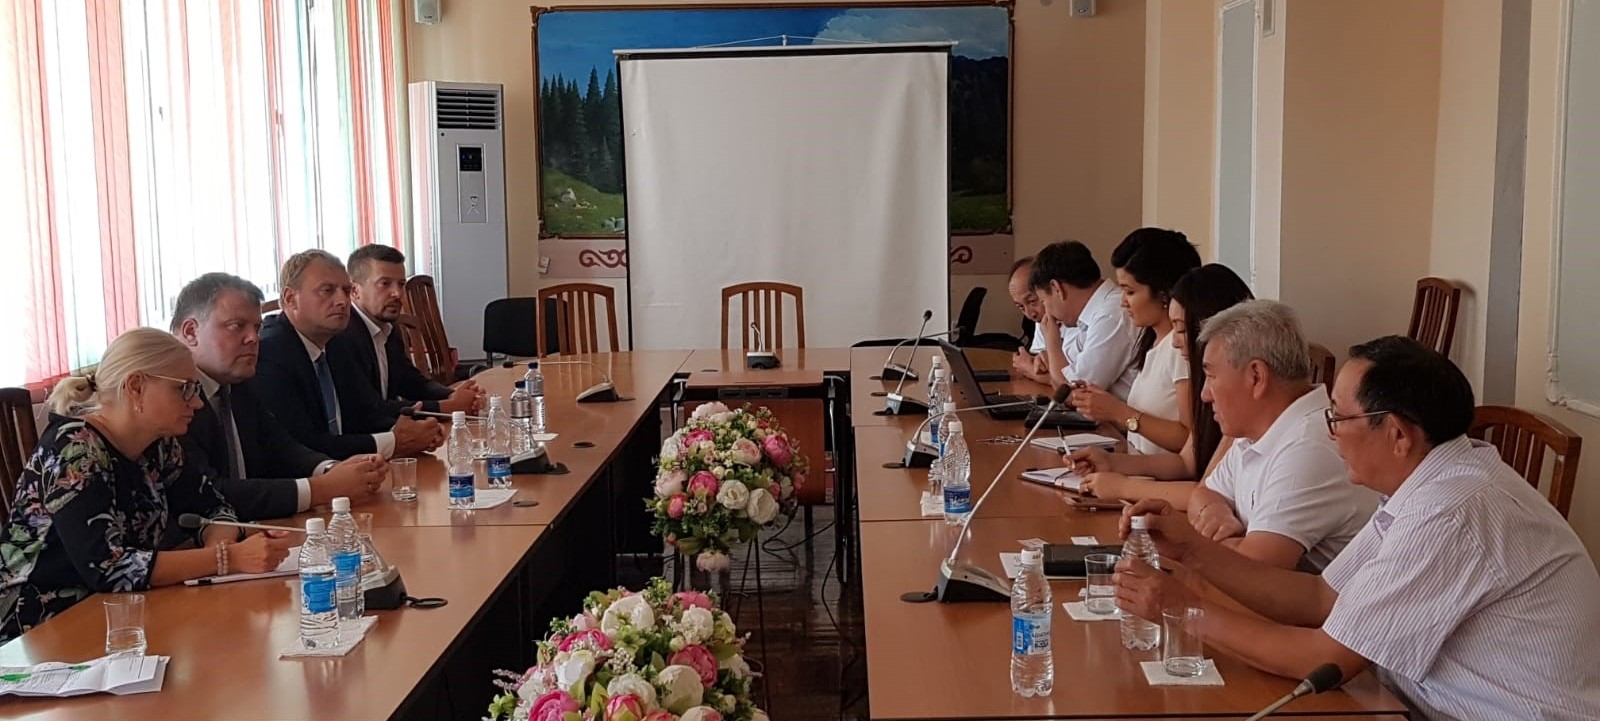 LPS dalās pieredzē Kirgizstānā par pašvaldību interešu pārstāvēšanu